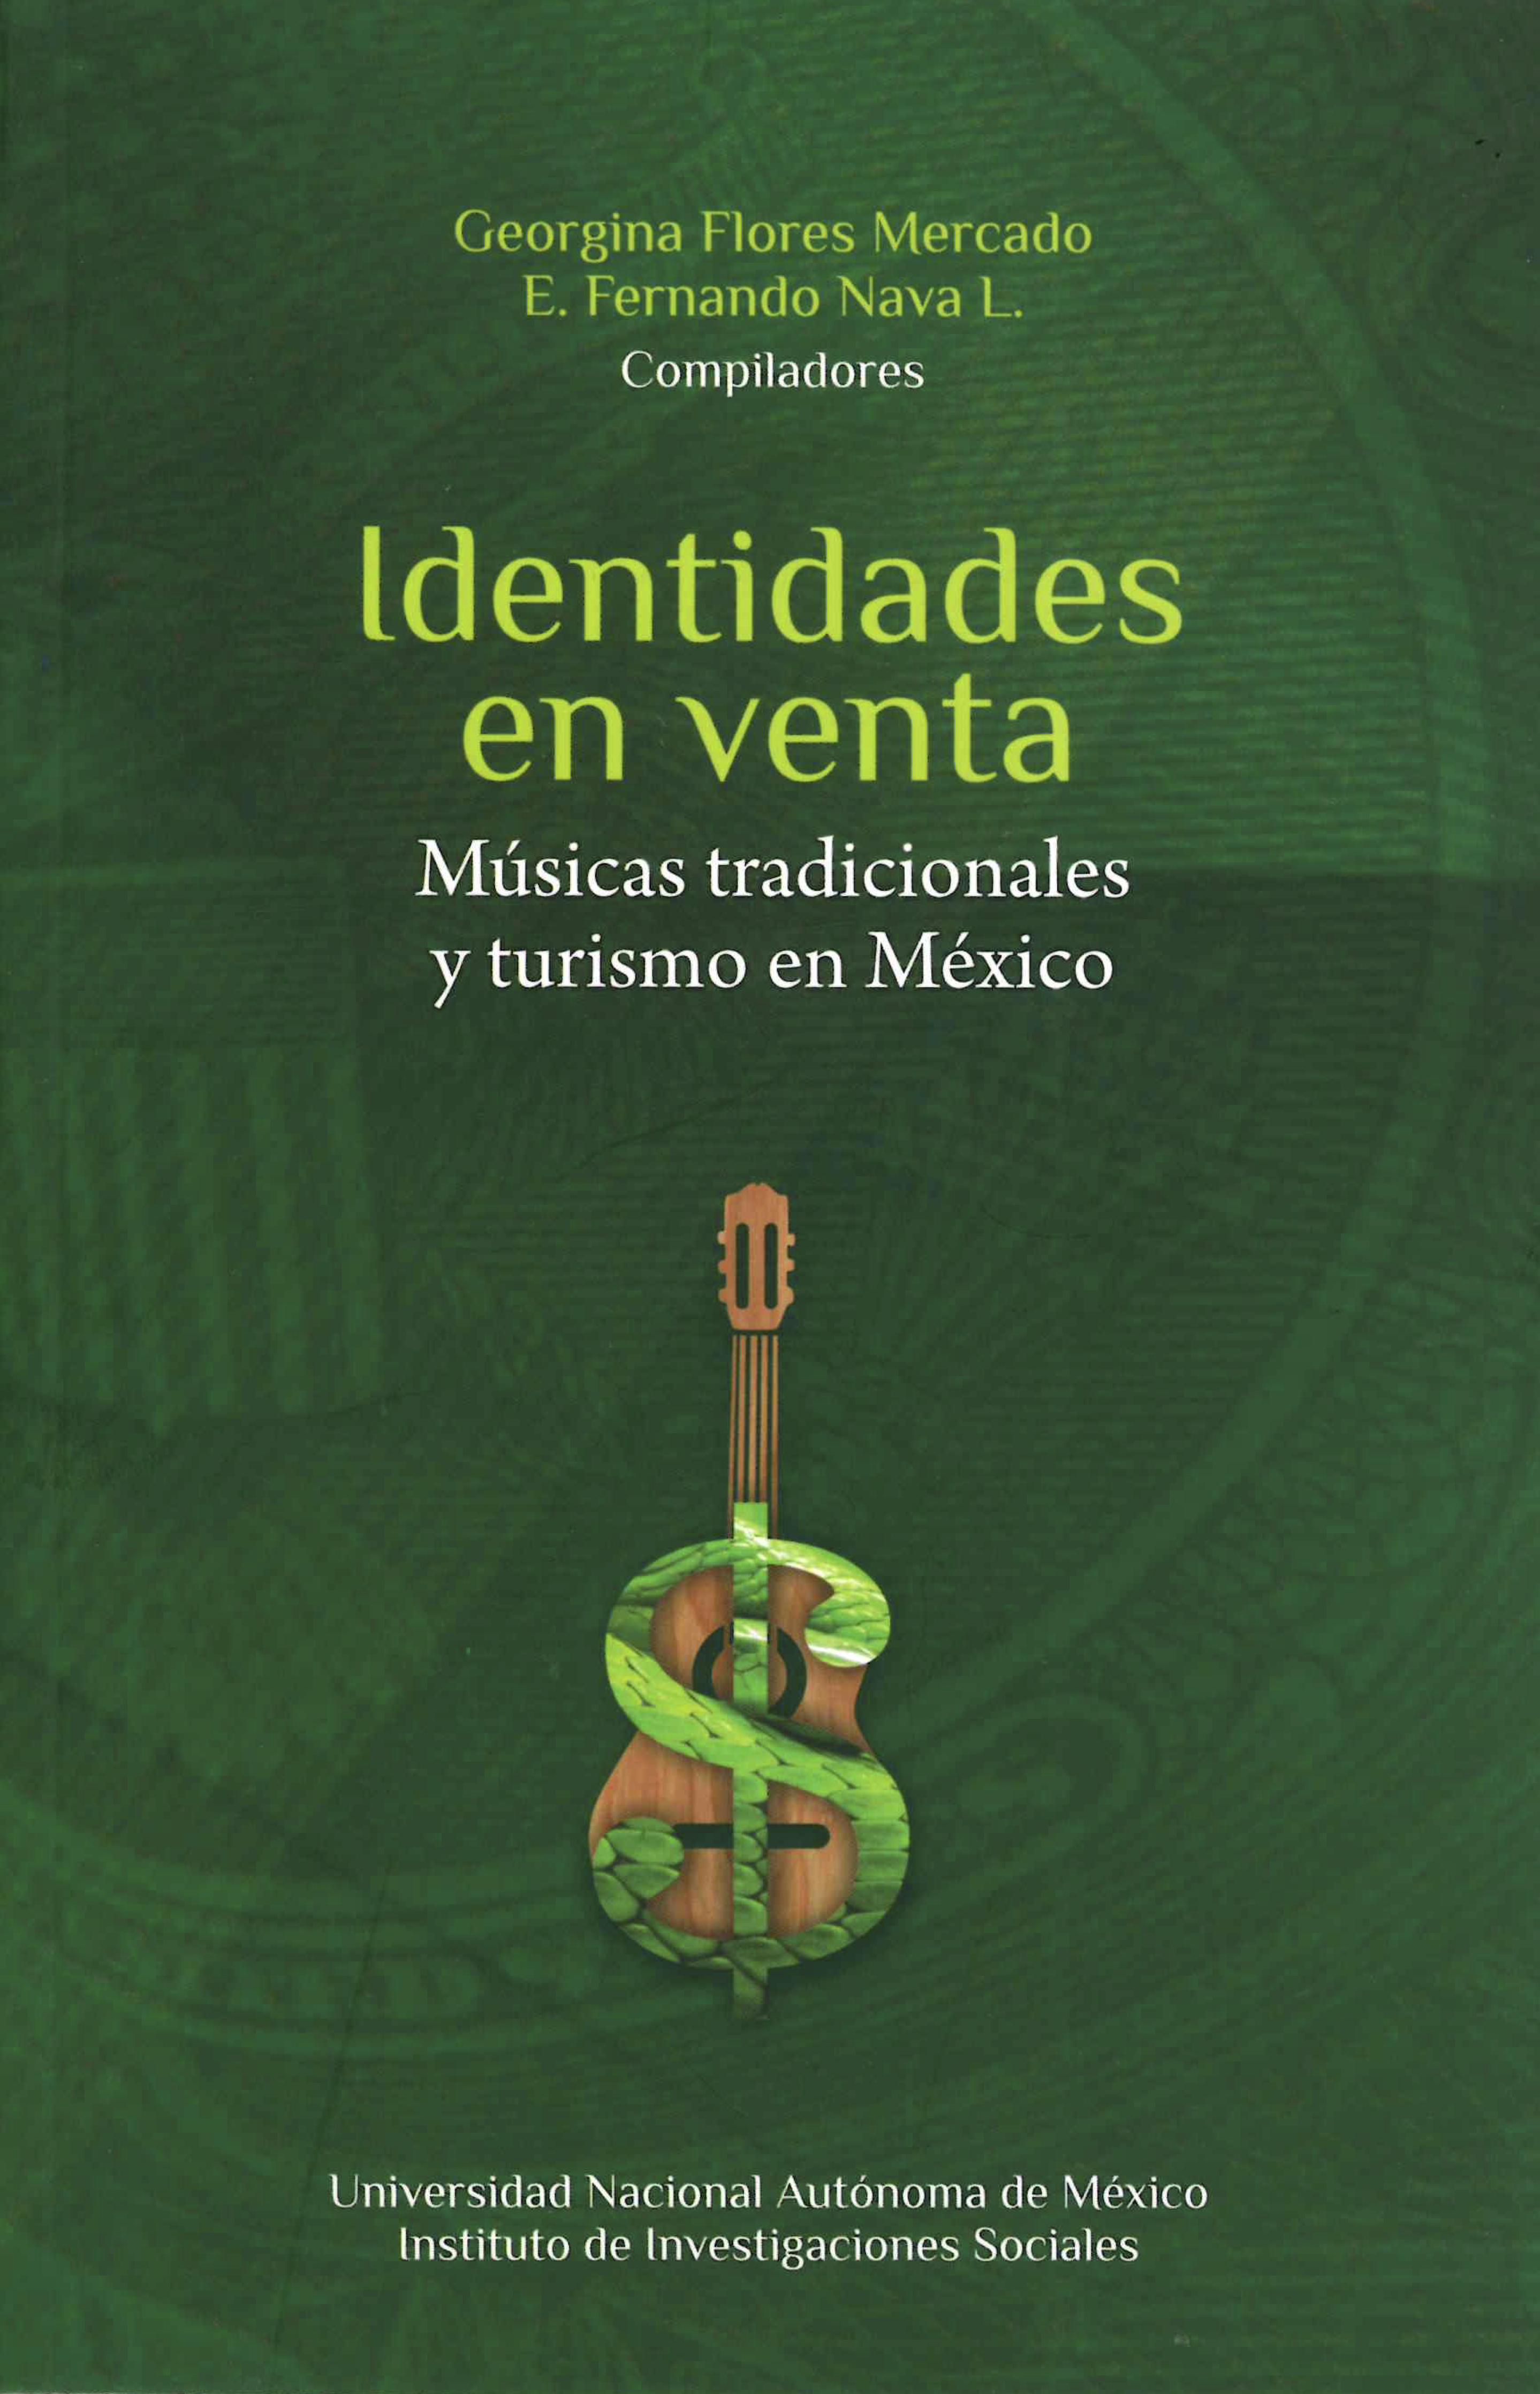 Identidades en venta. Músicas tradicionales y turismo en México.jpg